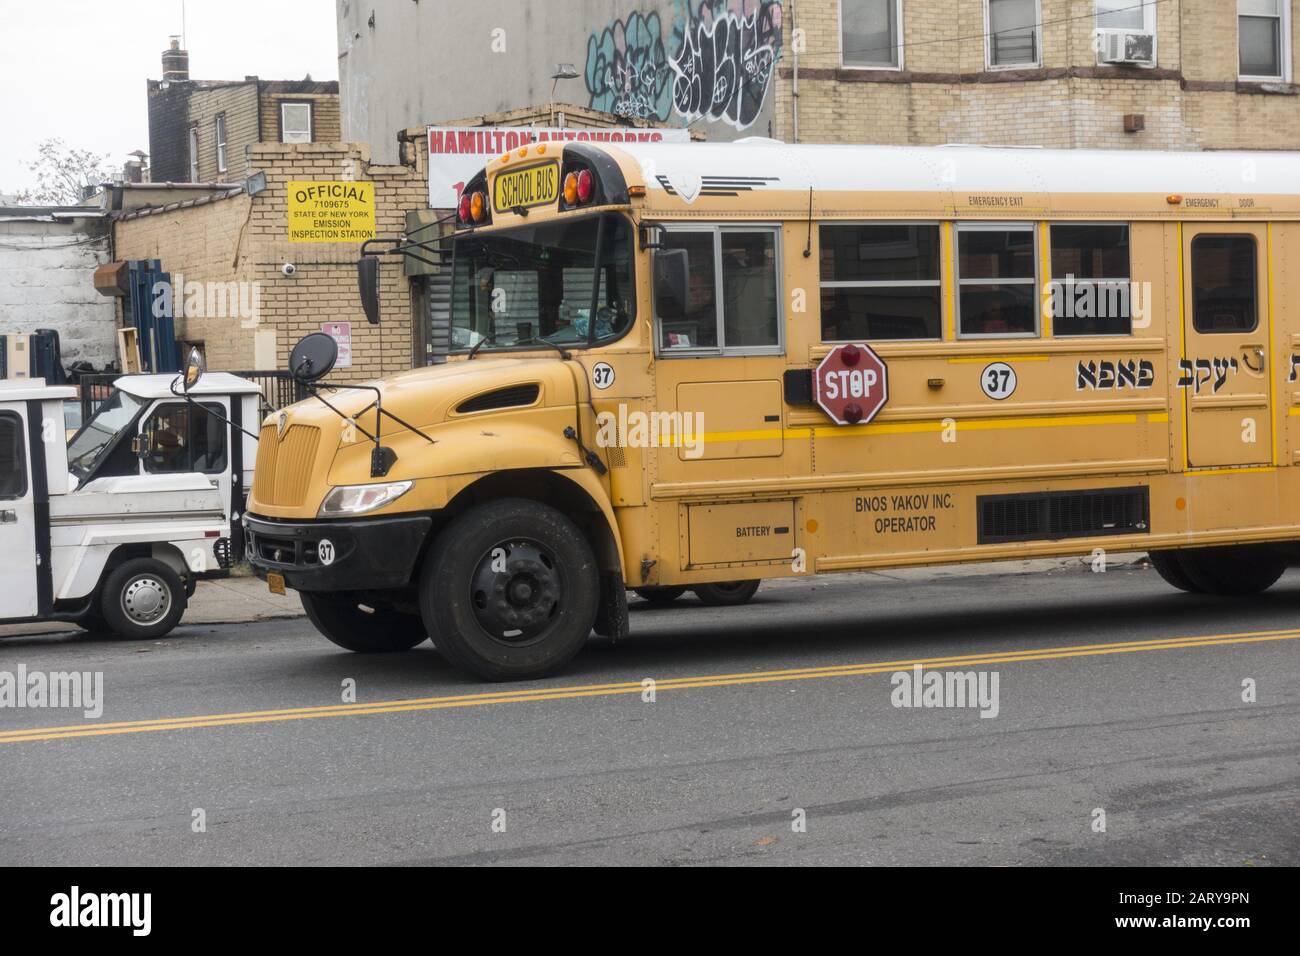 Schulbus einer orthodoxen jüdischen Grundschule mit hebräischer Schrift im Stadtviertel Borough Park in Brooklyn, New York. Stockfoto